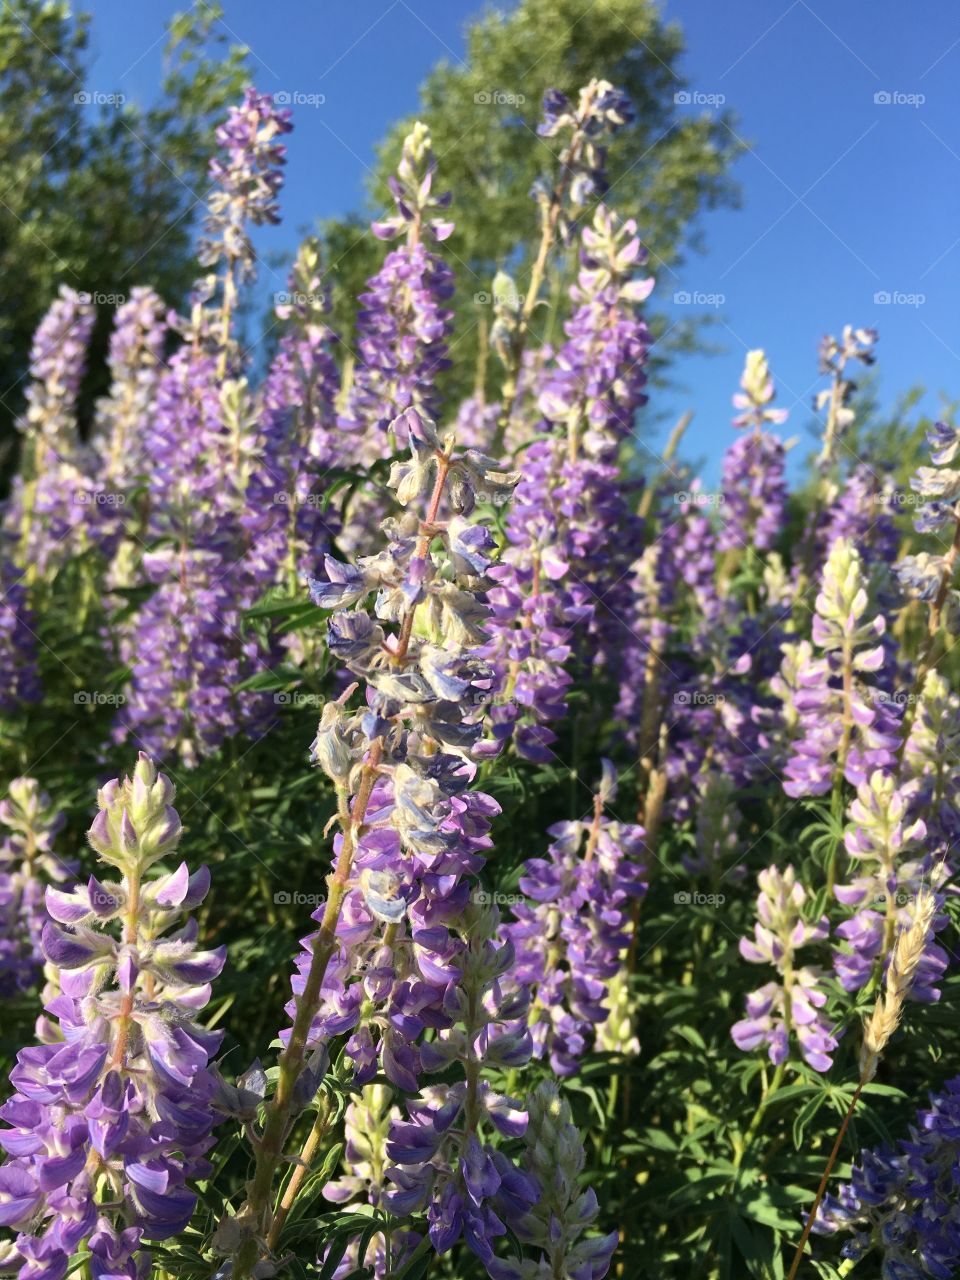 Colorado wild flowers 